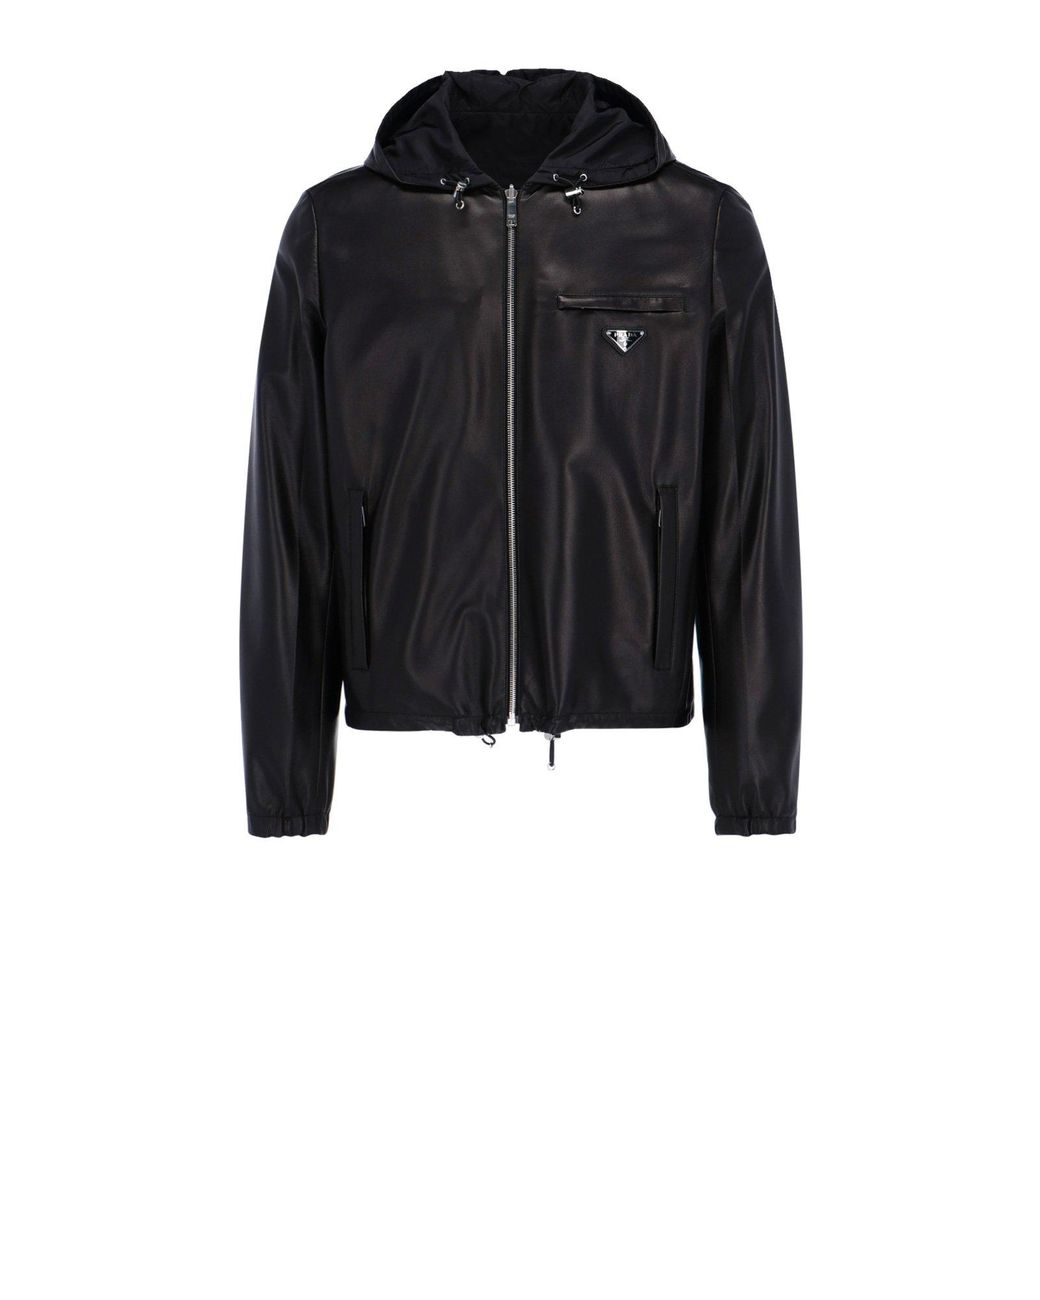 Prada Leather Reversible Hooded Blouson Jacket in Black for Men - Lyst